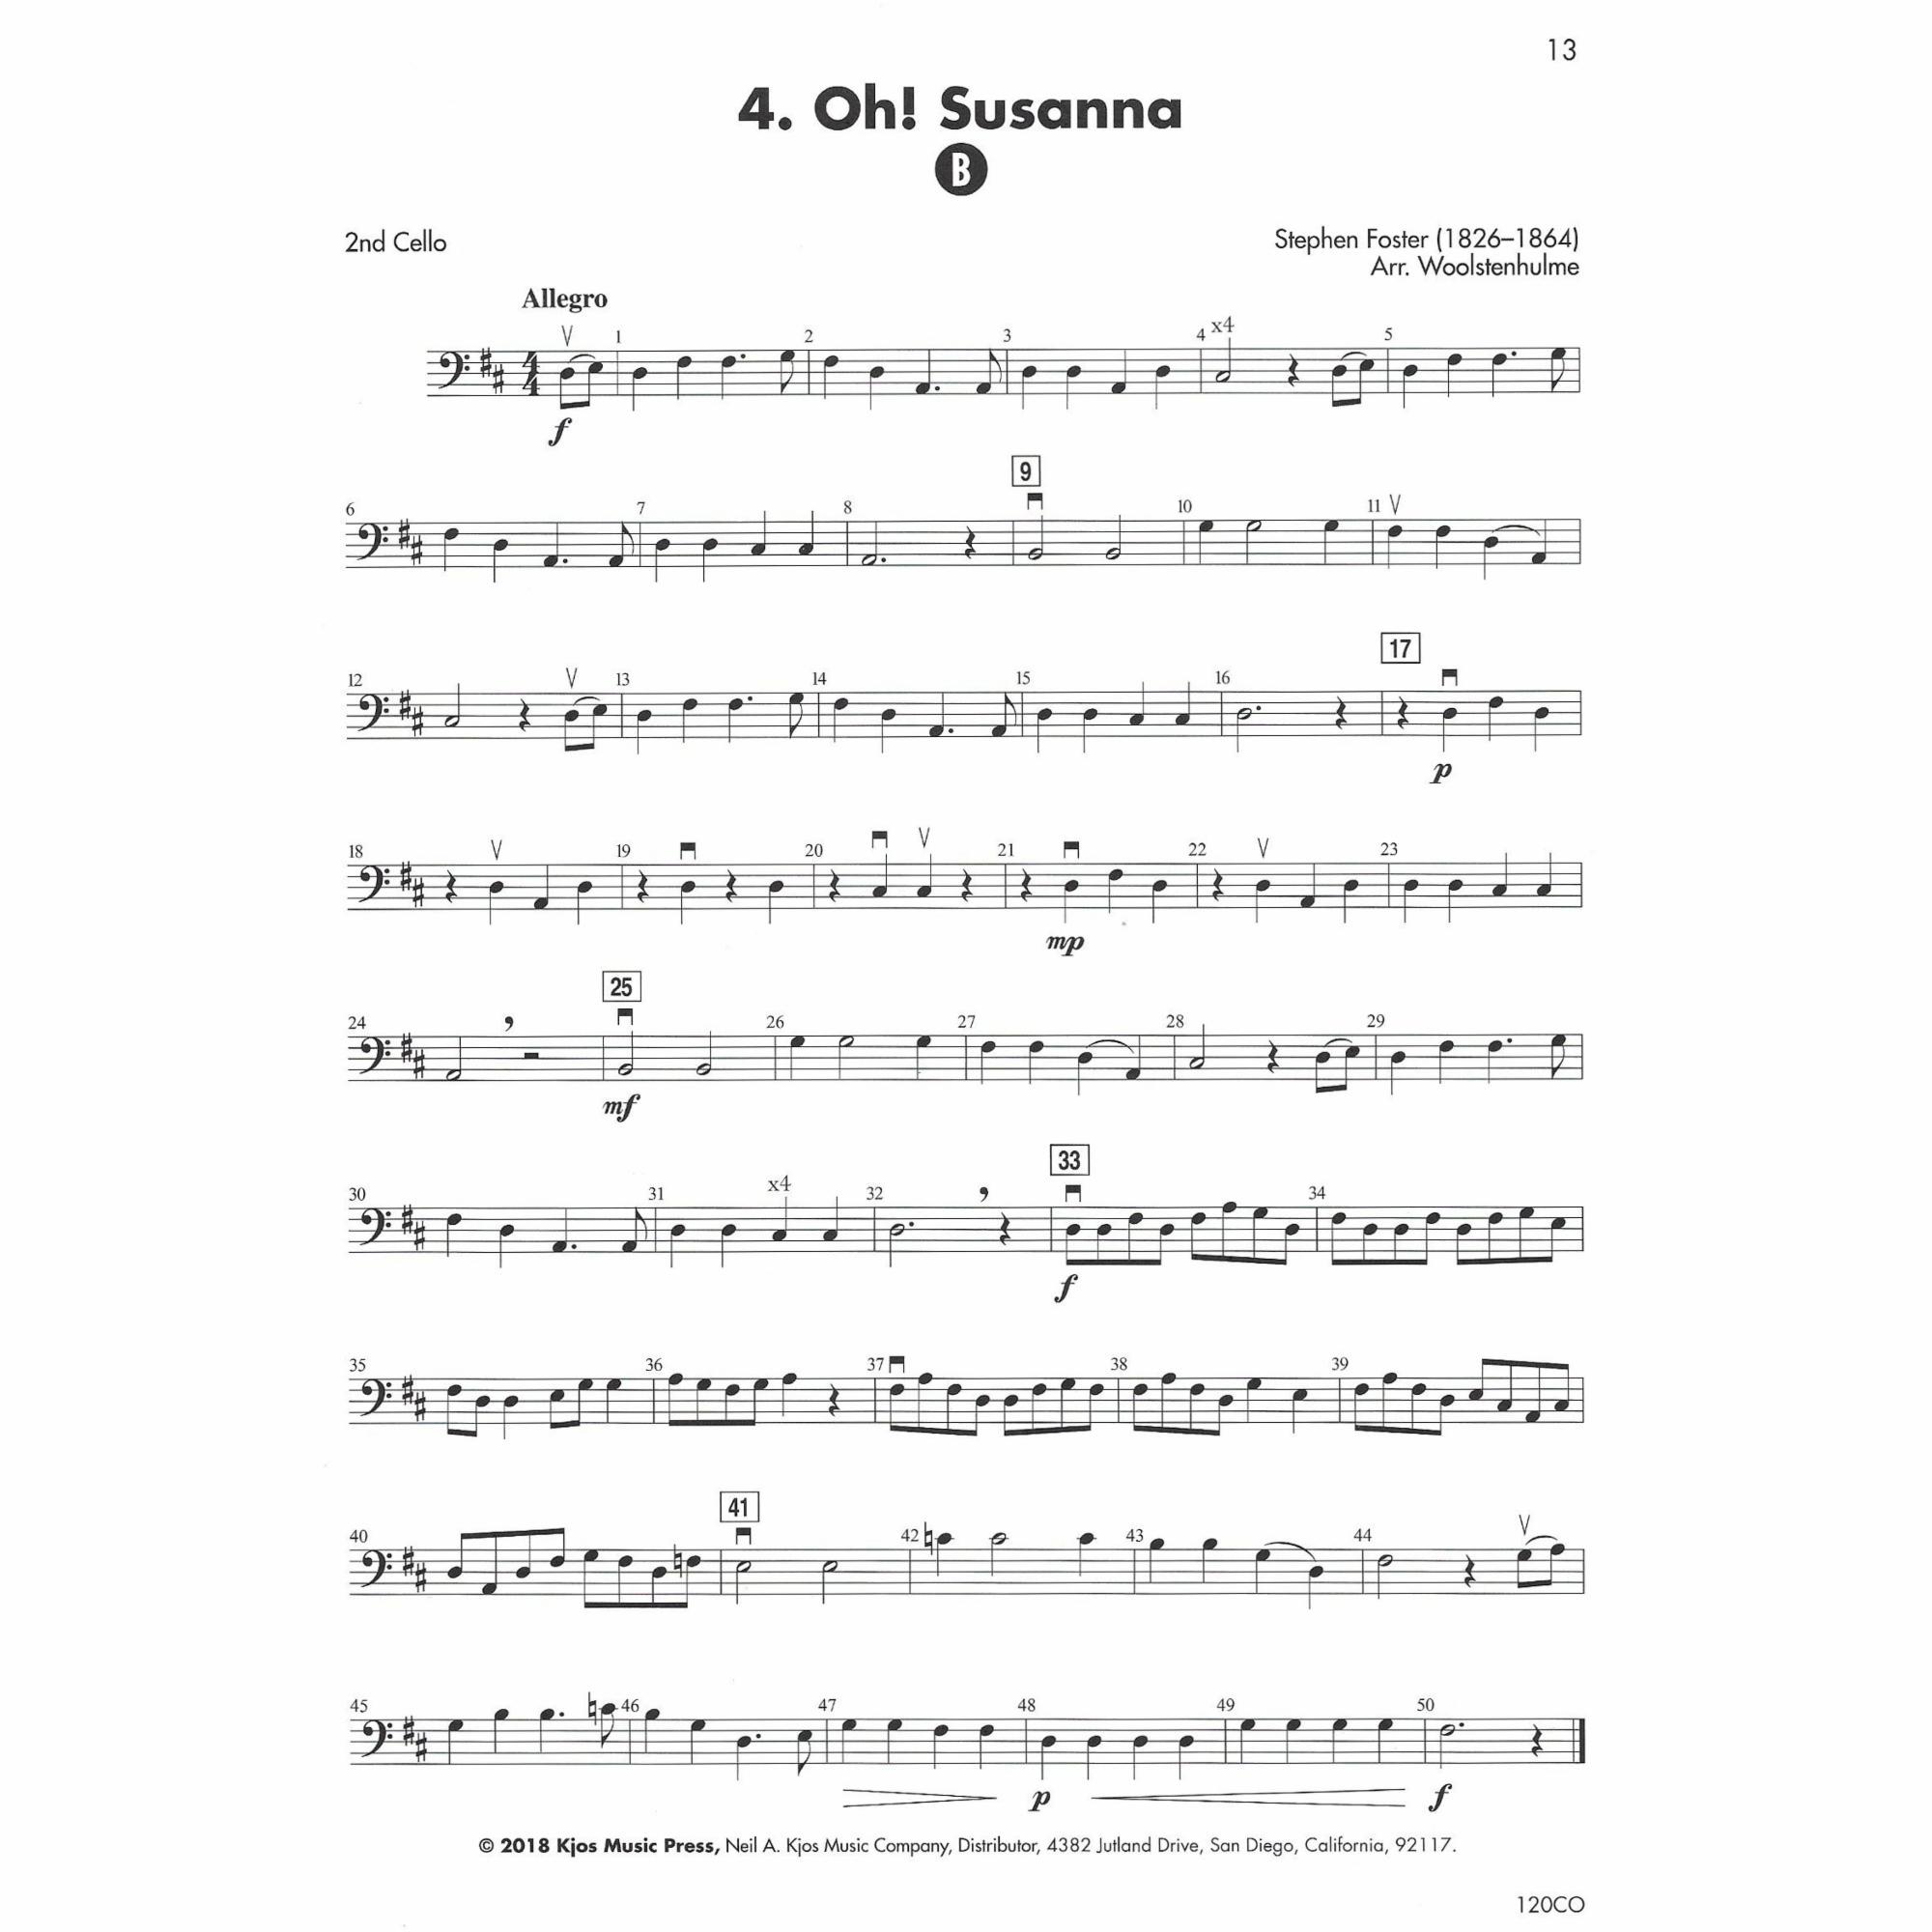 Sample: Cello (Pg. 13)